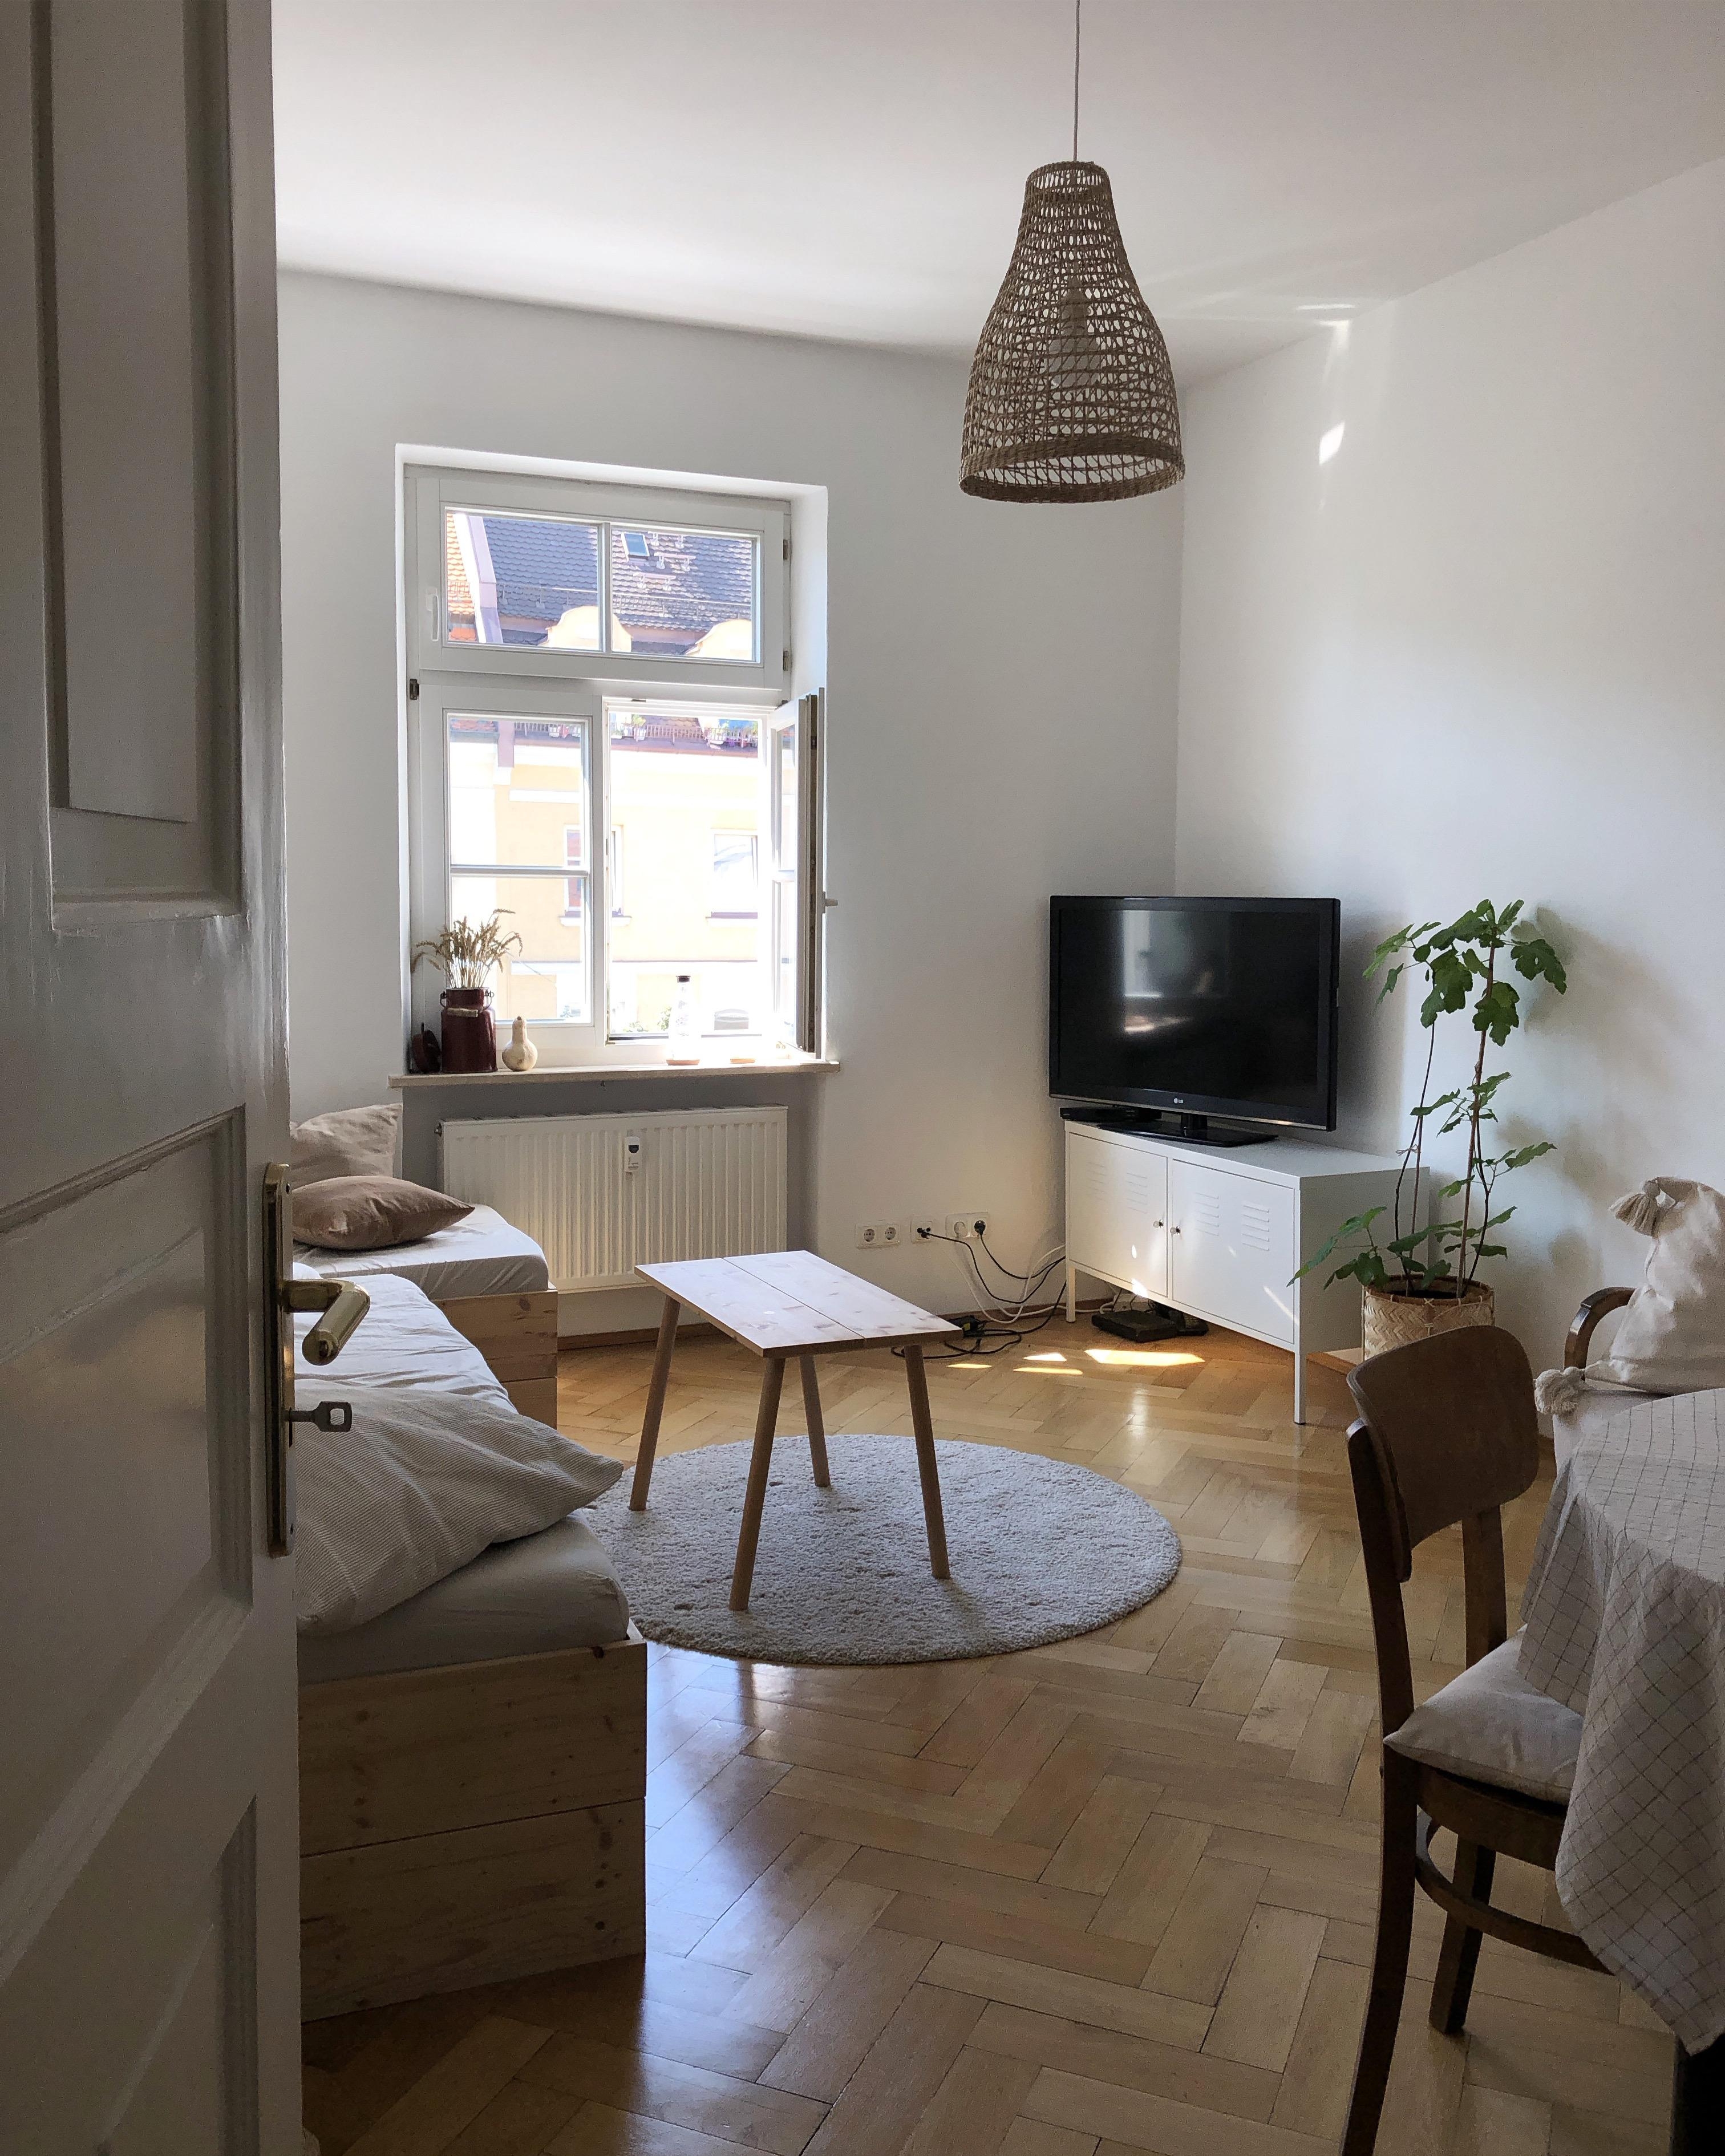 Schönes Wochenende ☀️.
#wohnzimmer #altbau #minimalistisch 